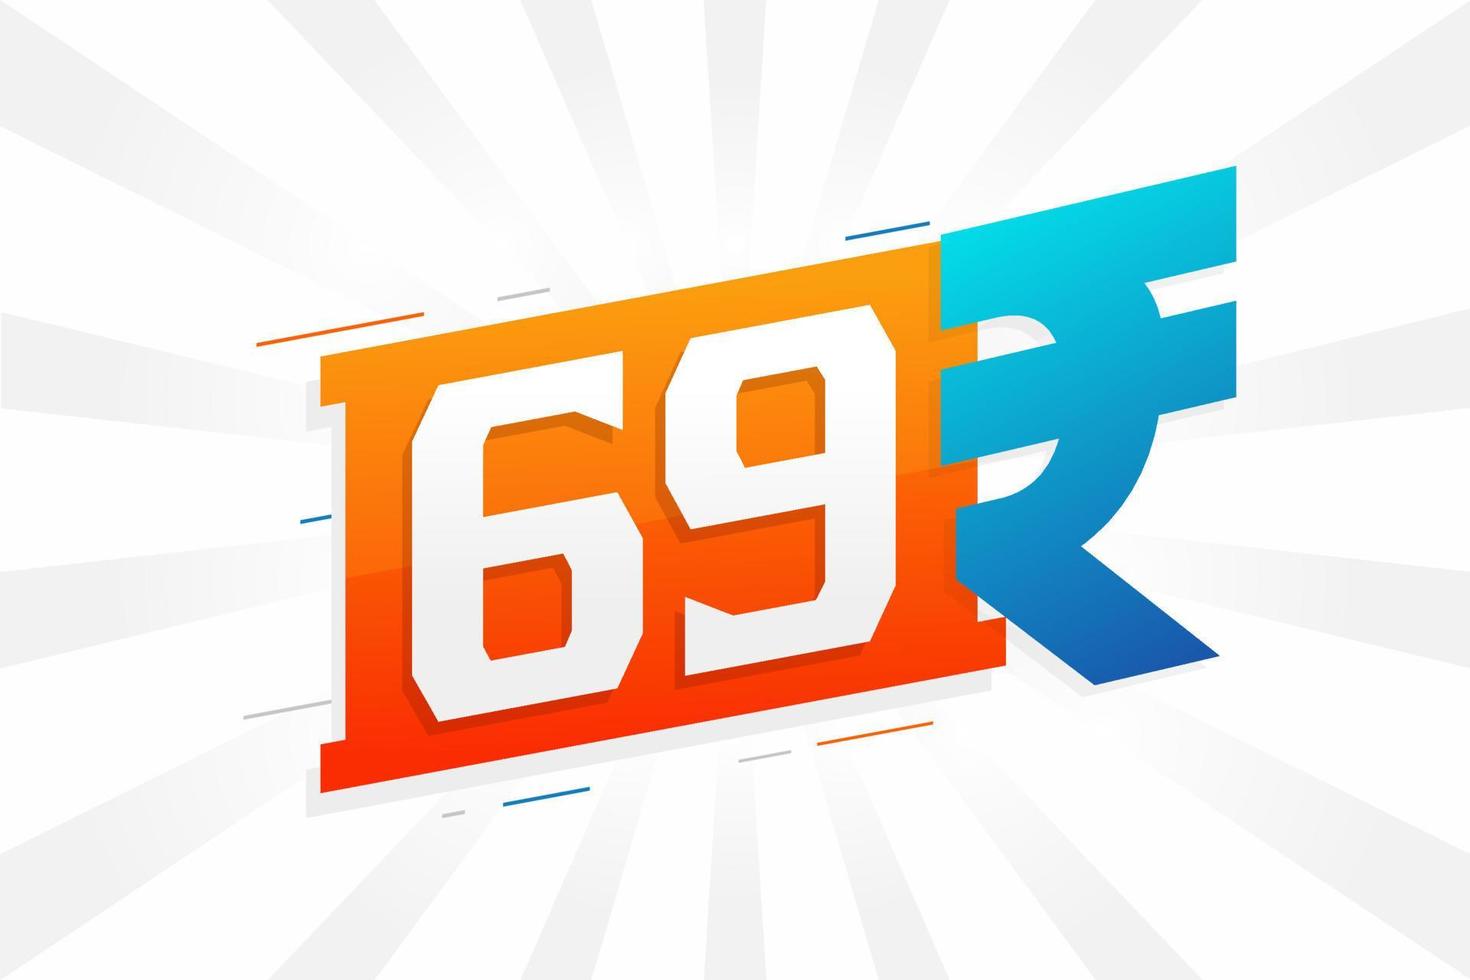 Imagem de vetor de texto em negrito símbolo 69 rupias. ilustração vetorial de sinal de moeda de 69 rupias indianas